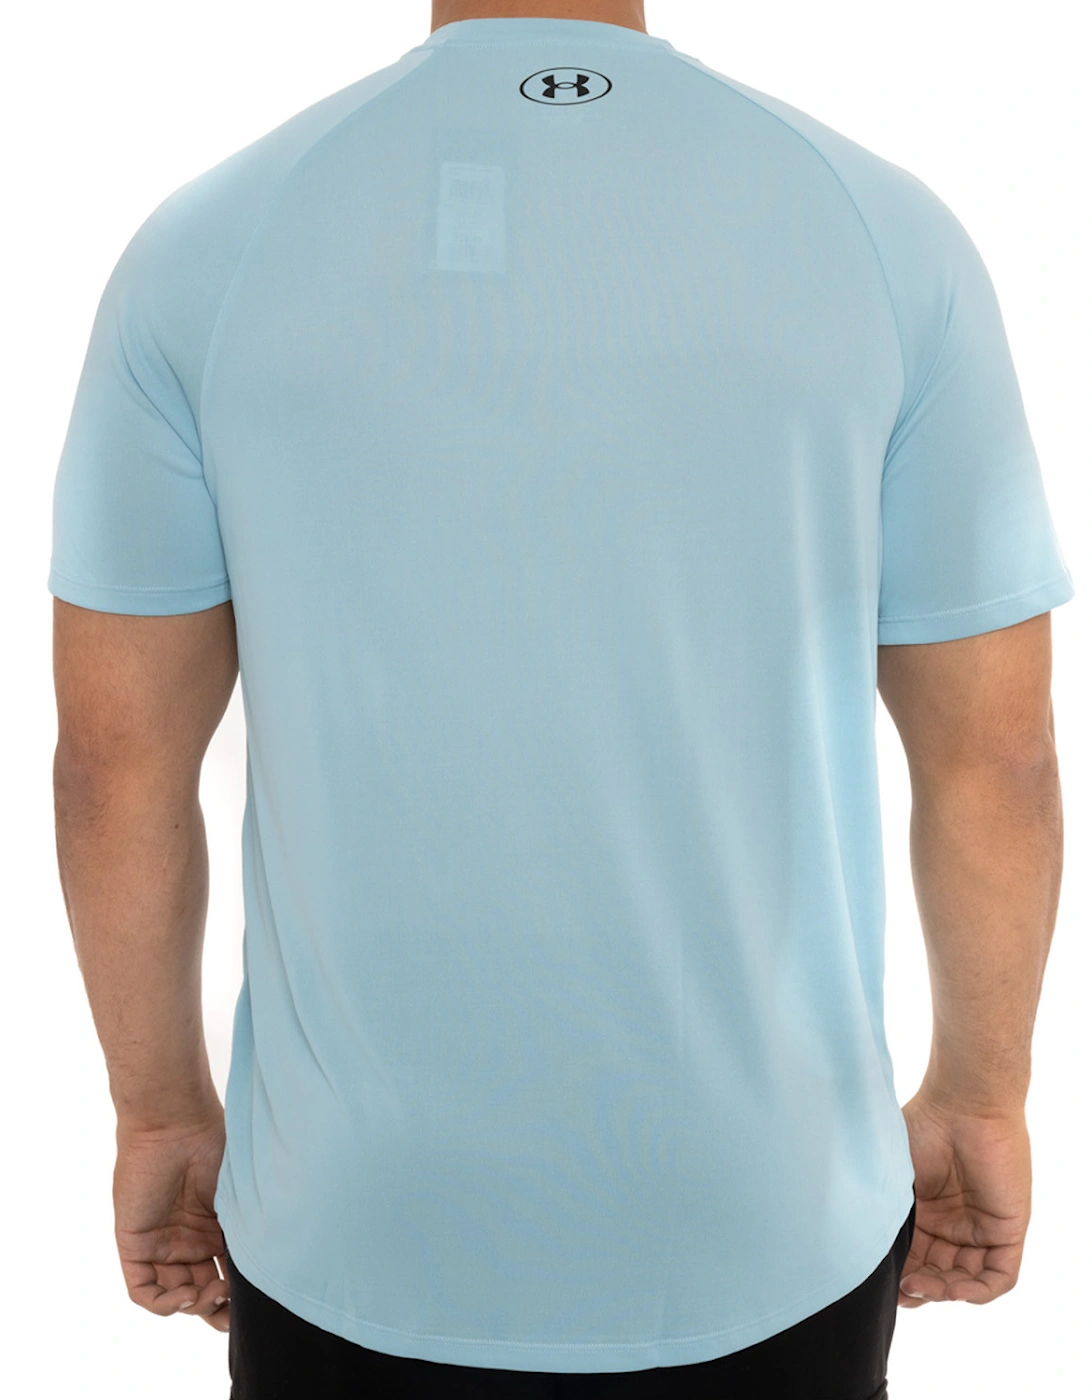 Mens Tech T-Shirt 2.0 (Sky Blue)